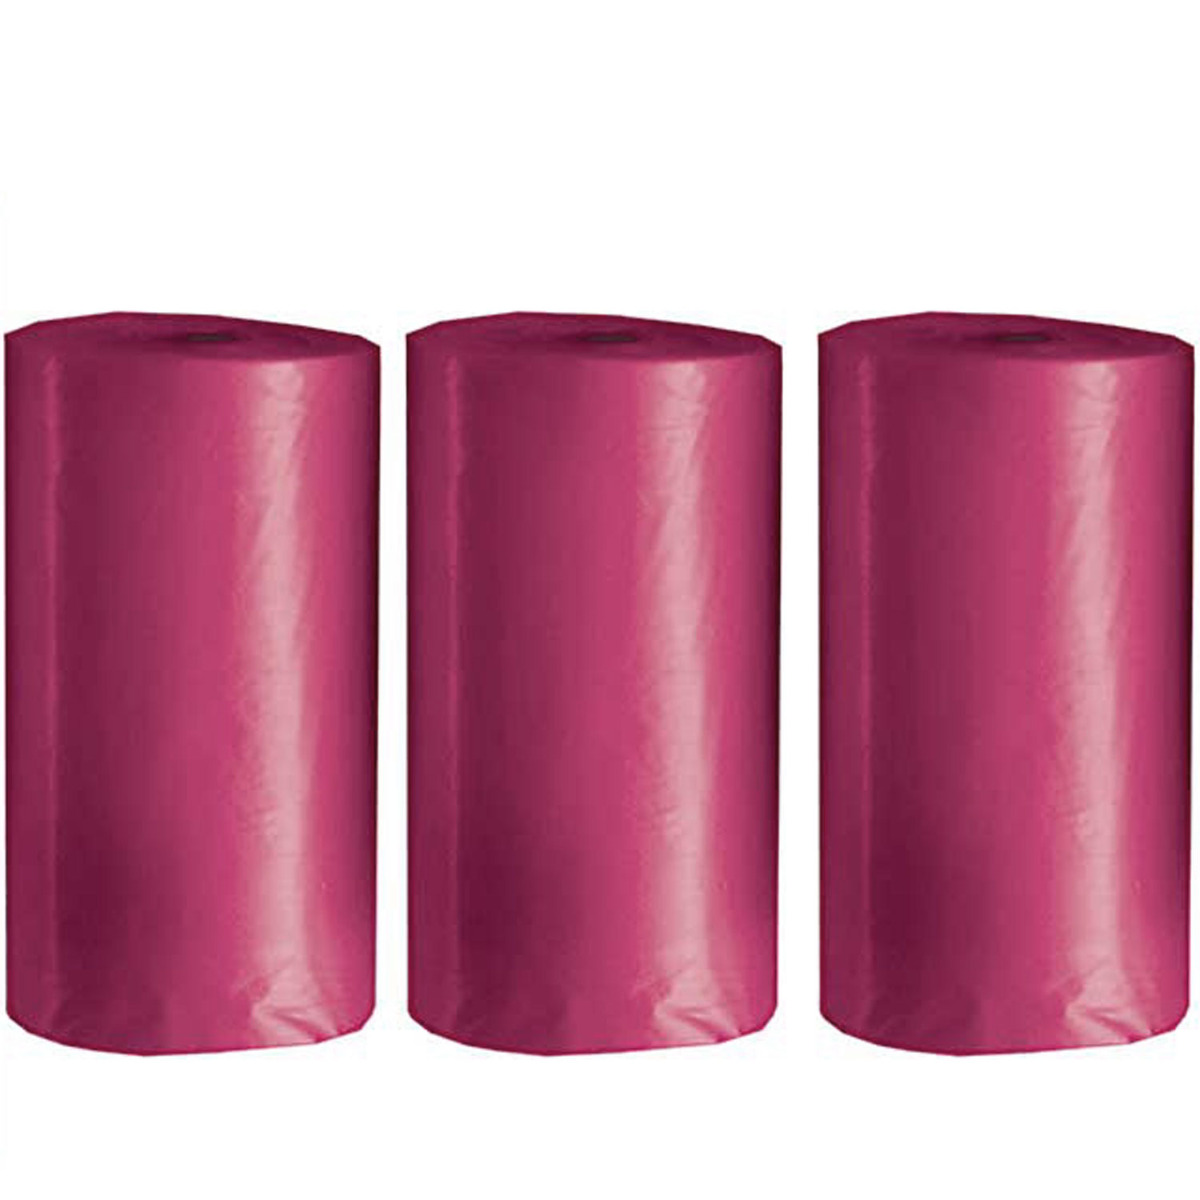 Hundekotbeutel im 3er Pack - biologisch abbaubare Sackersl fürs Gackerl in rosa für Ihren Hundekotbeutelspender